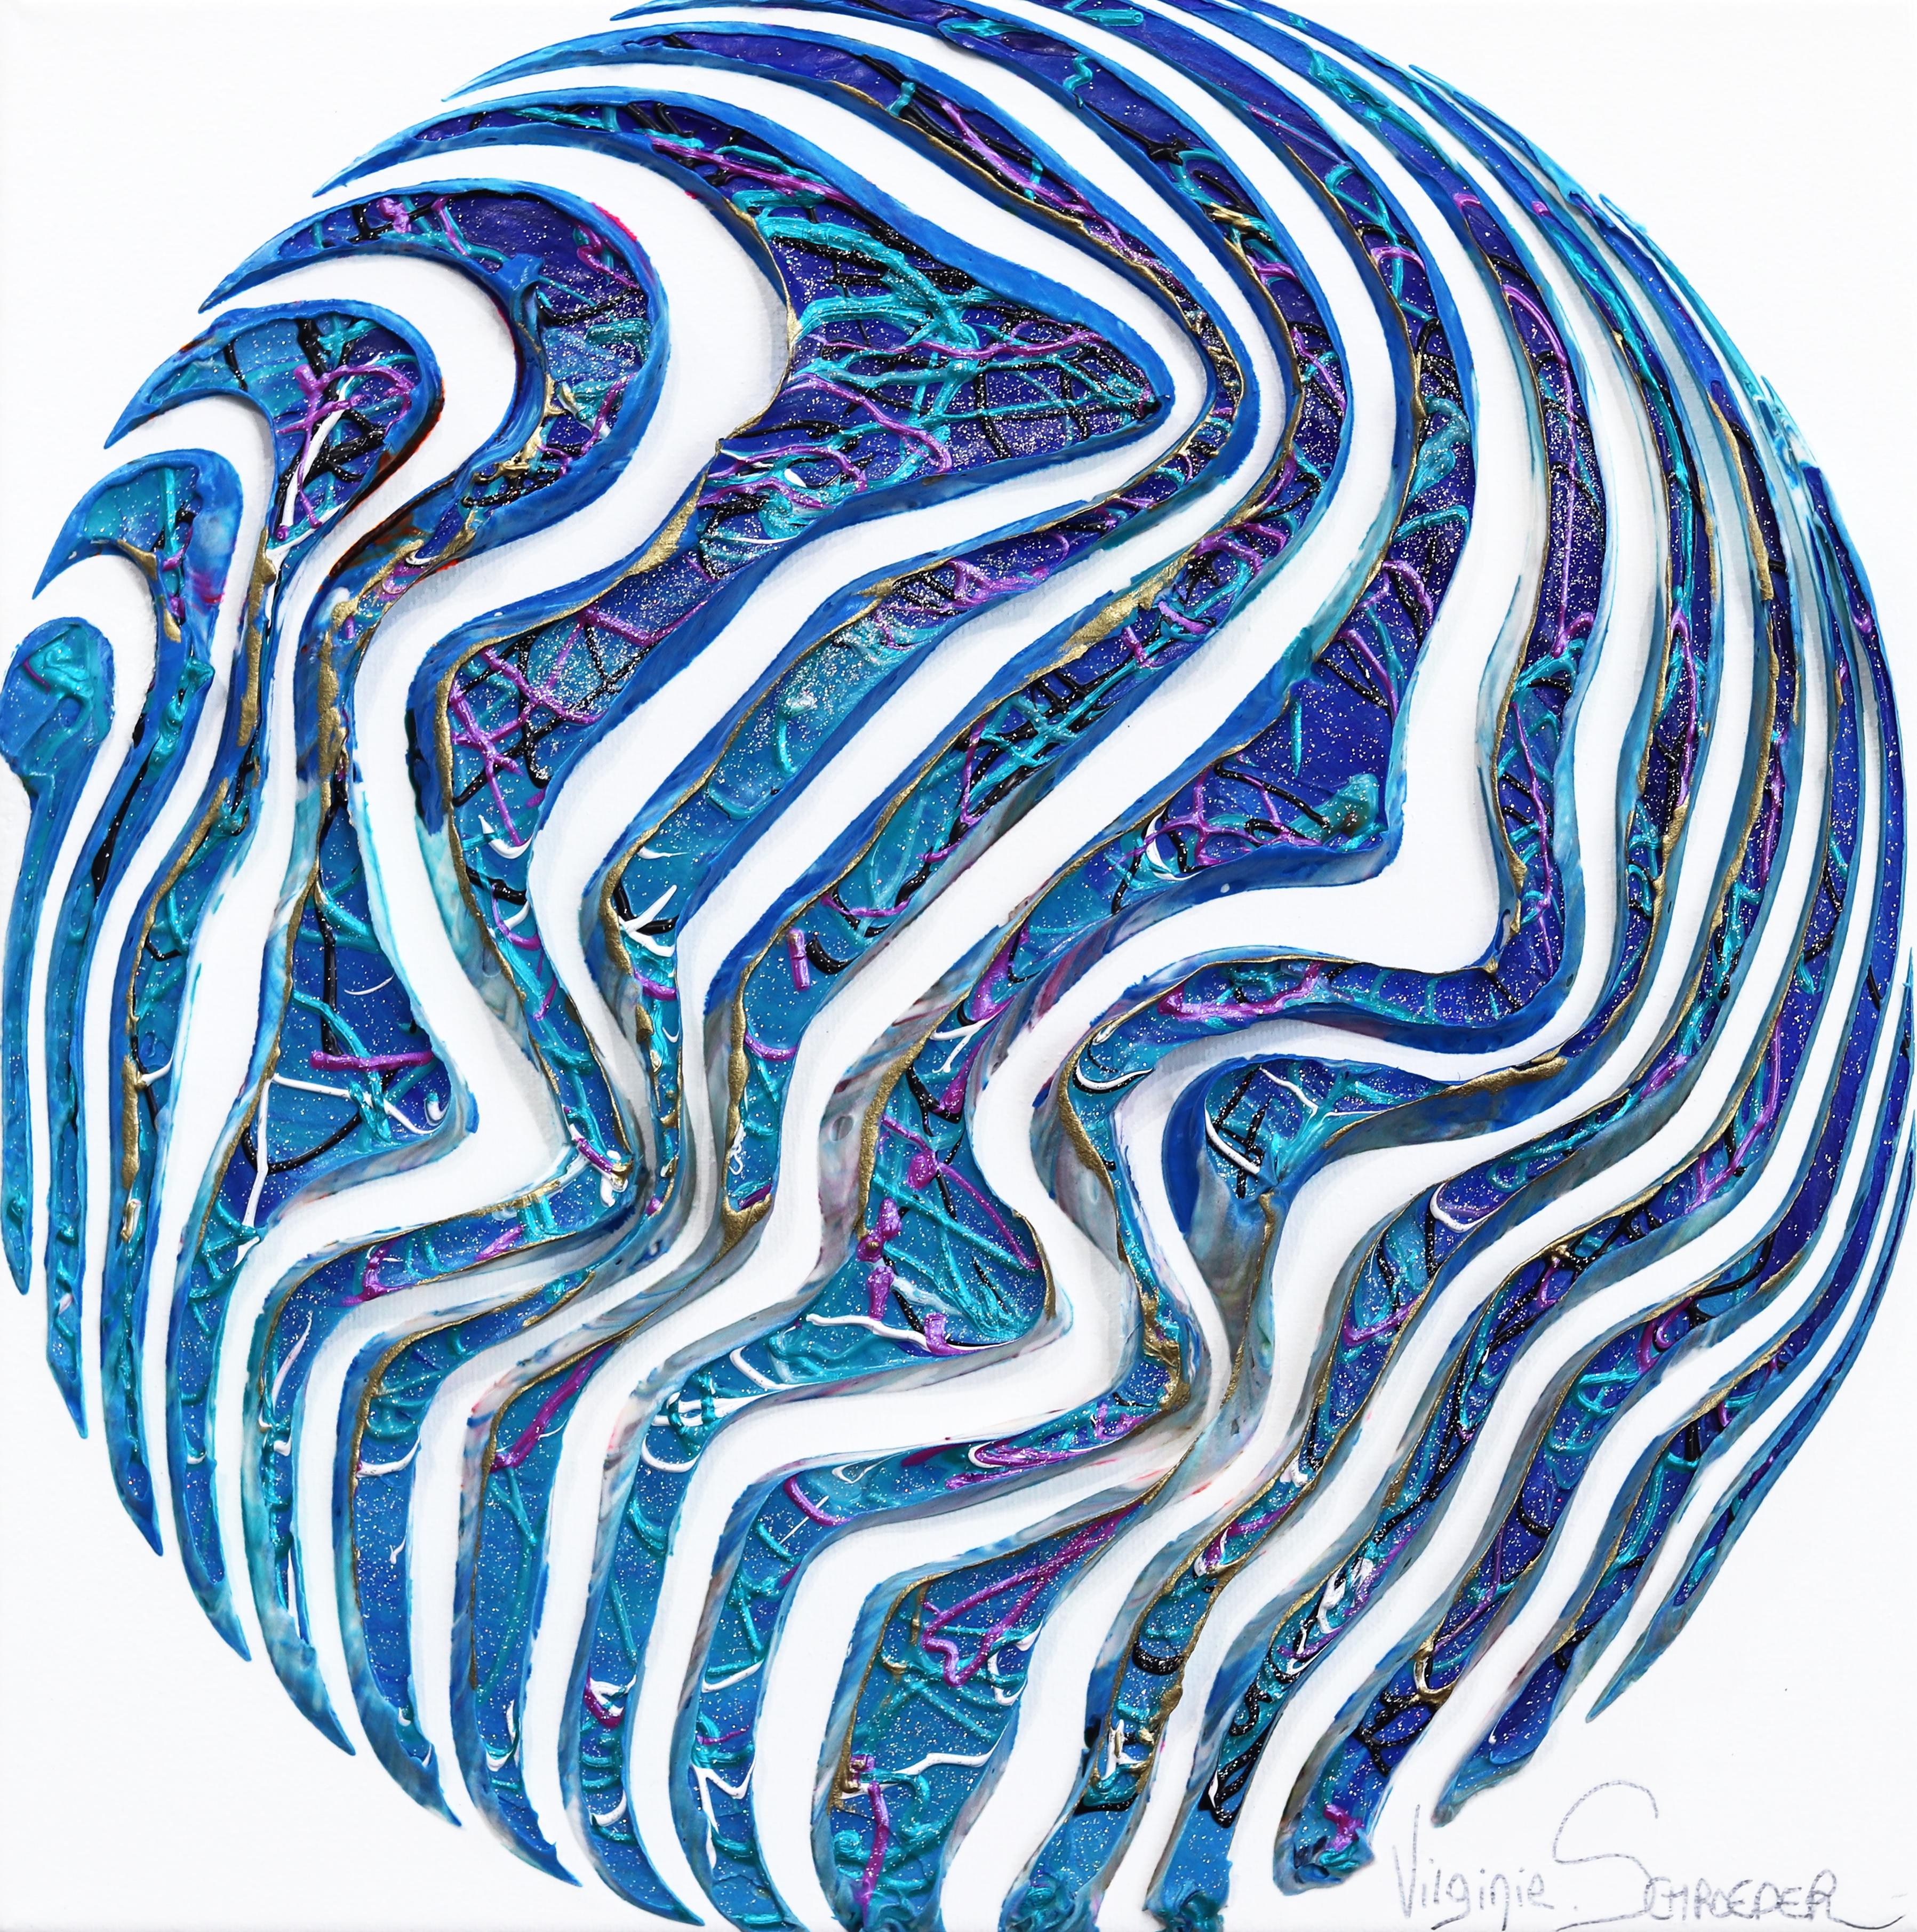 The Waves and the Life - Minimalistisches abstraktes 3D-Gemälde mit strukturiertem blauem Kreis – Art von Virginie Schroeder